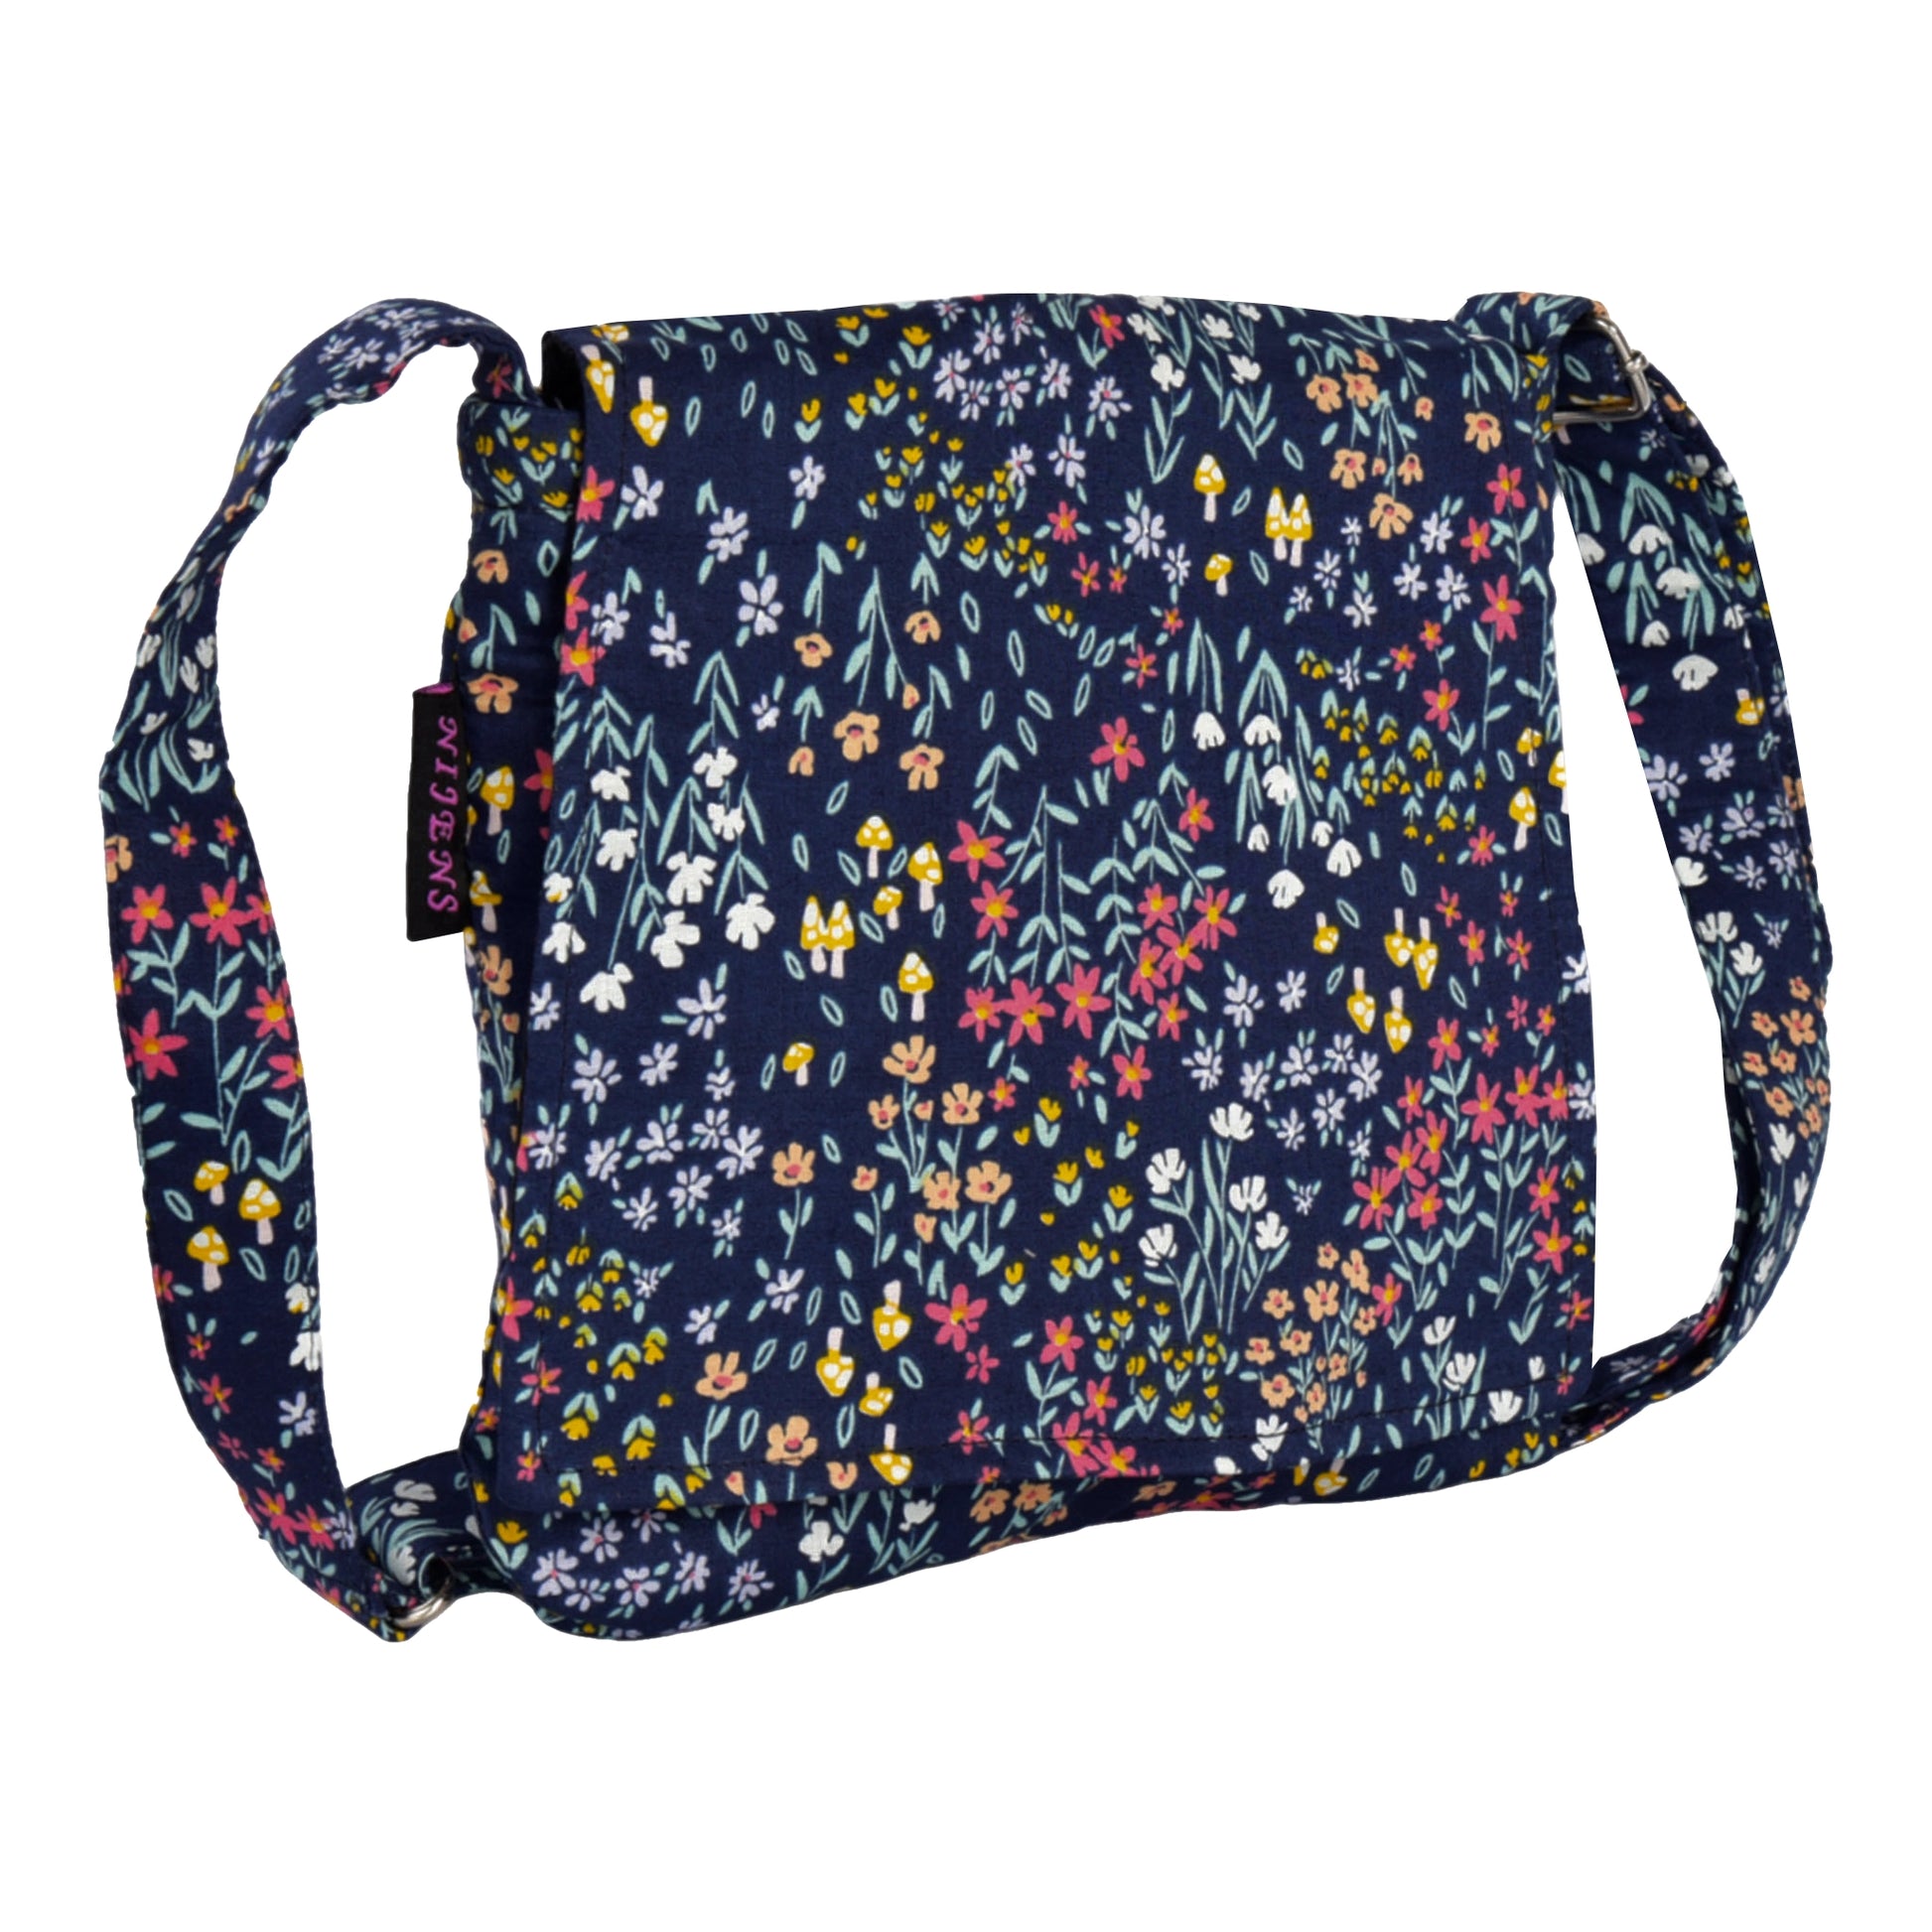 Kleine Tasche, Umhängetasche aus Baumwolle, Dunkelblau mit Blumenmuster. Ein Hauptfach mit Einsteckfach und jeweils ein Reißverschlussfach vorne und hinten.